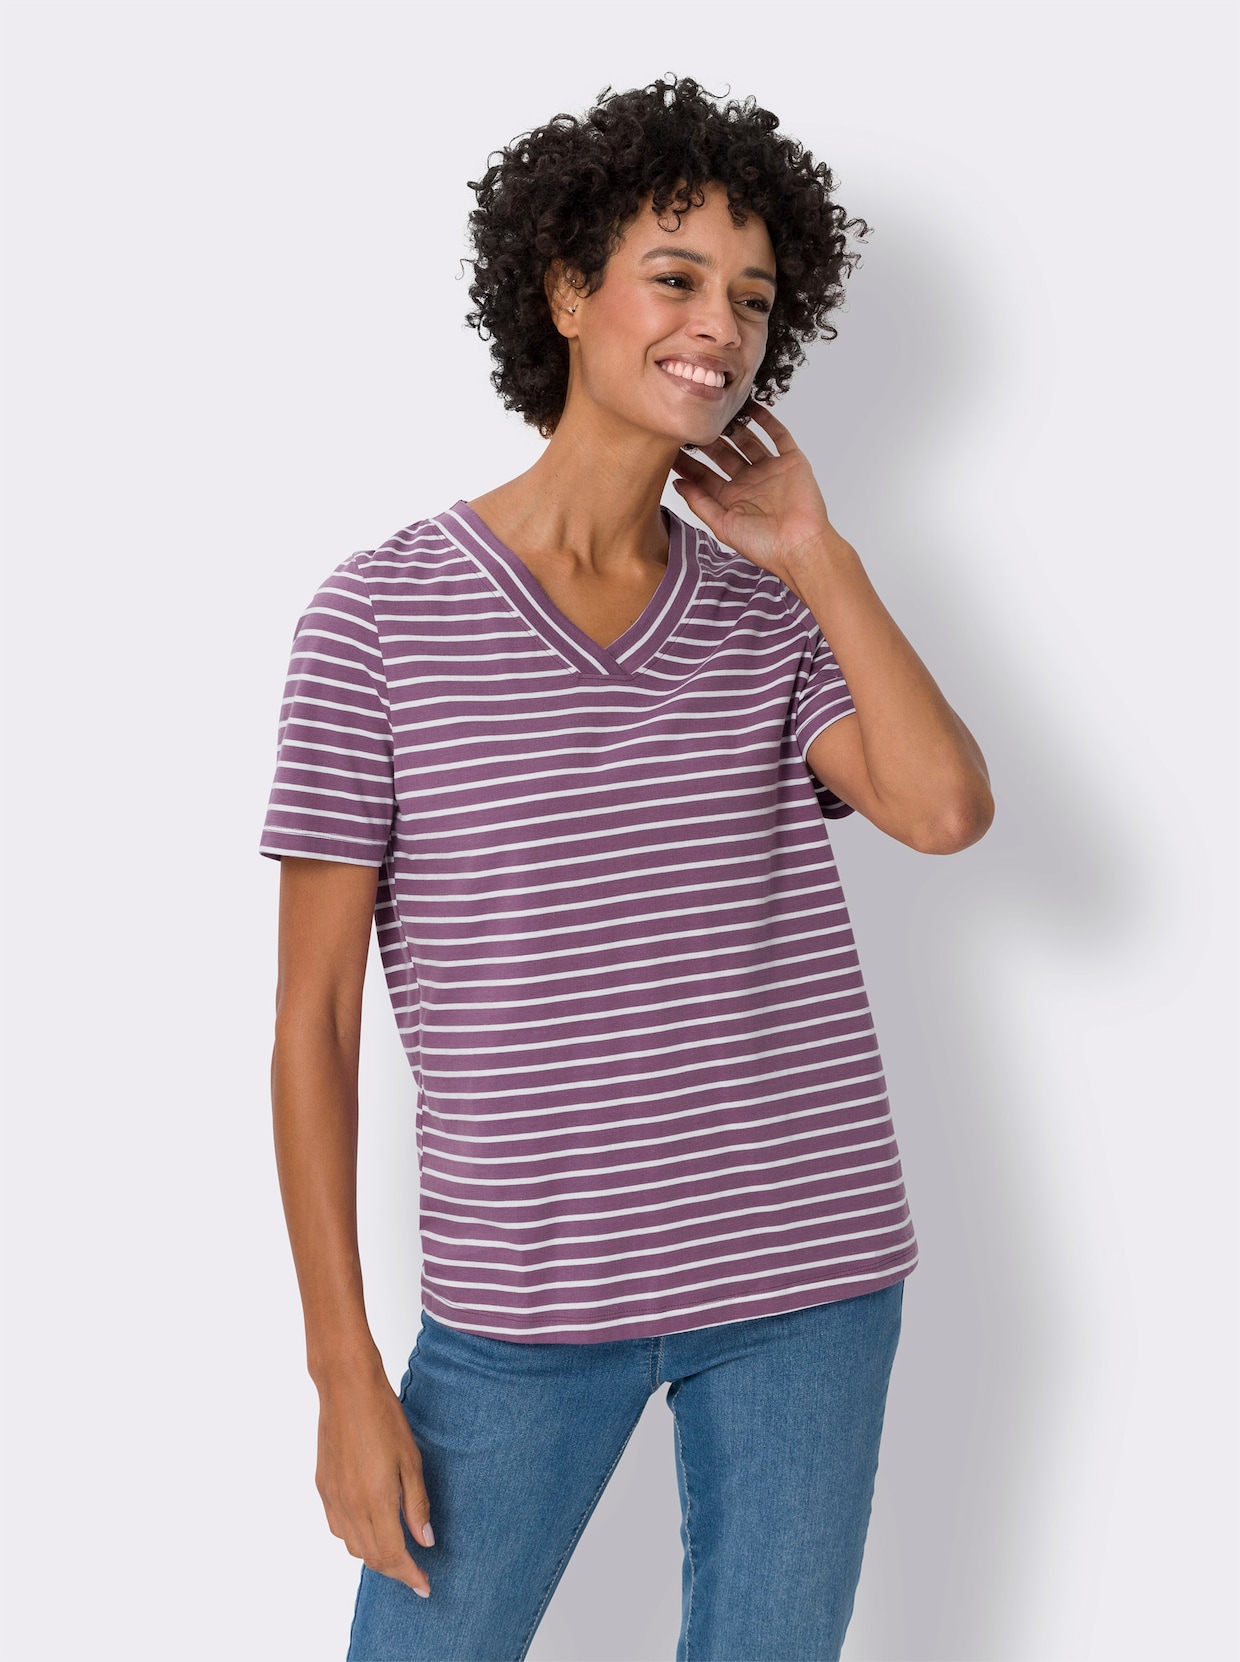 Tričko s krátkým rukávem - fialová-ecru-proužek